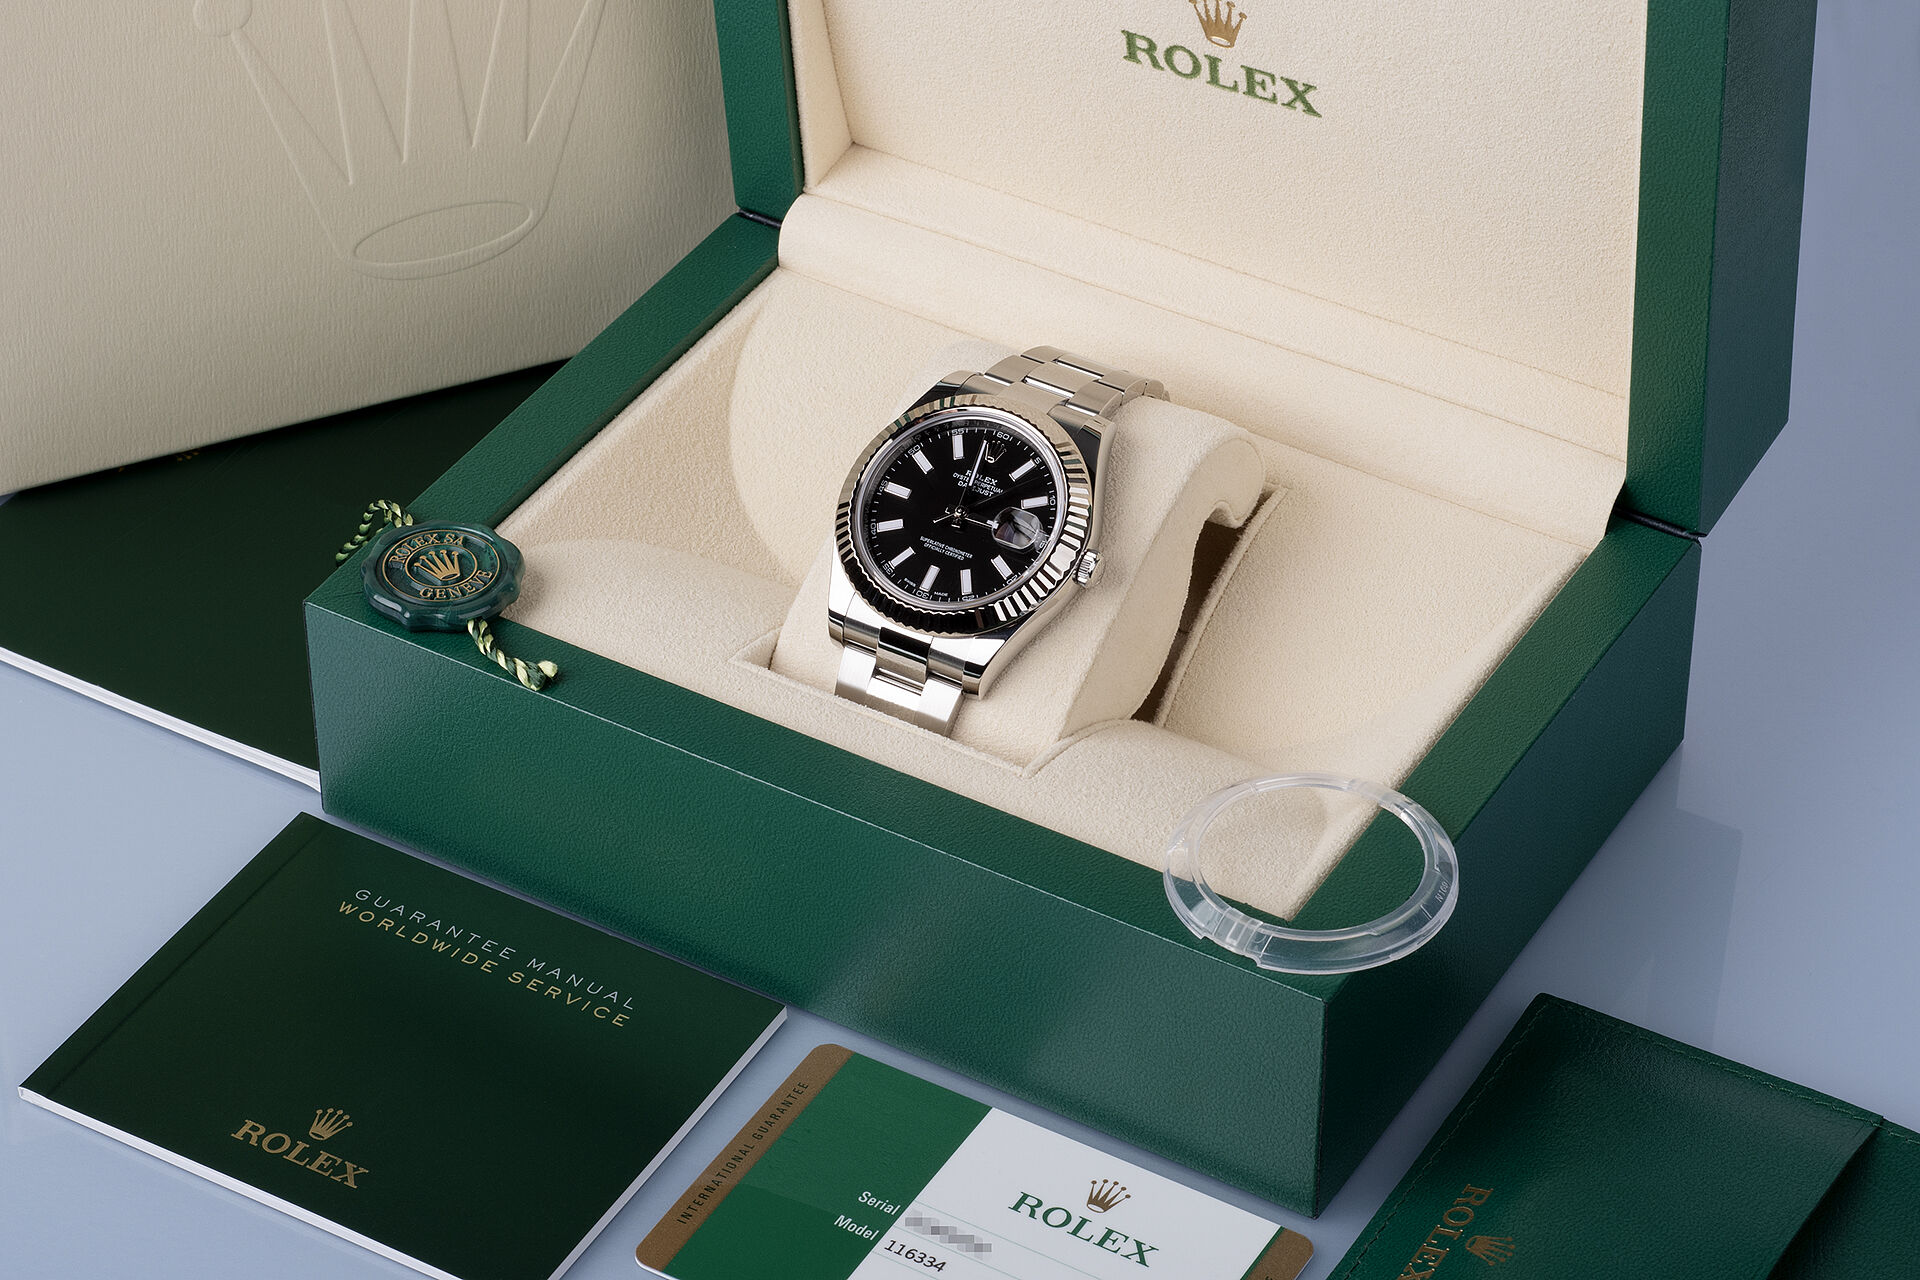 ref 116334 | Box & Certificate | Rolex Datejust II